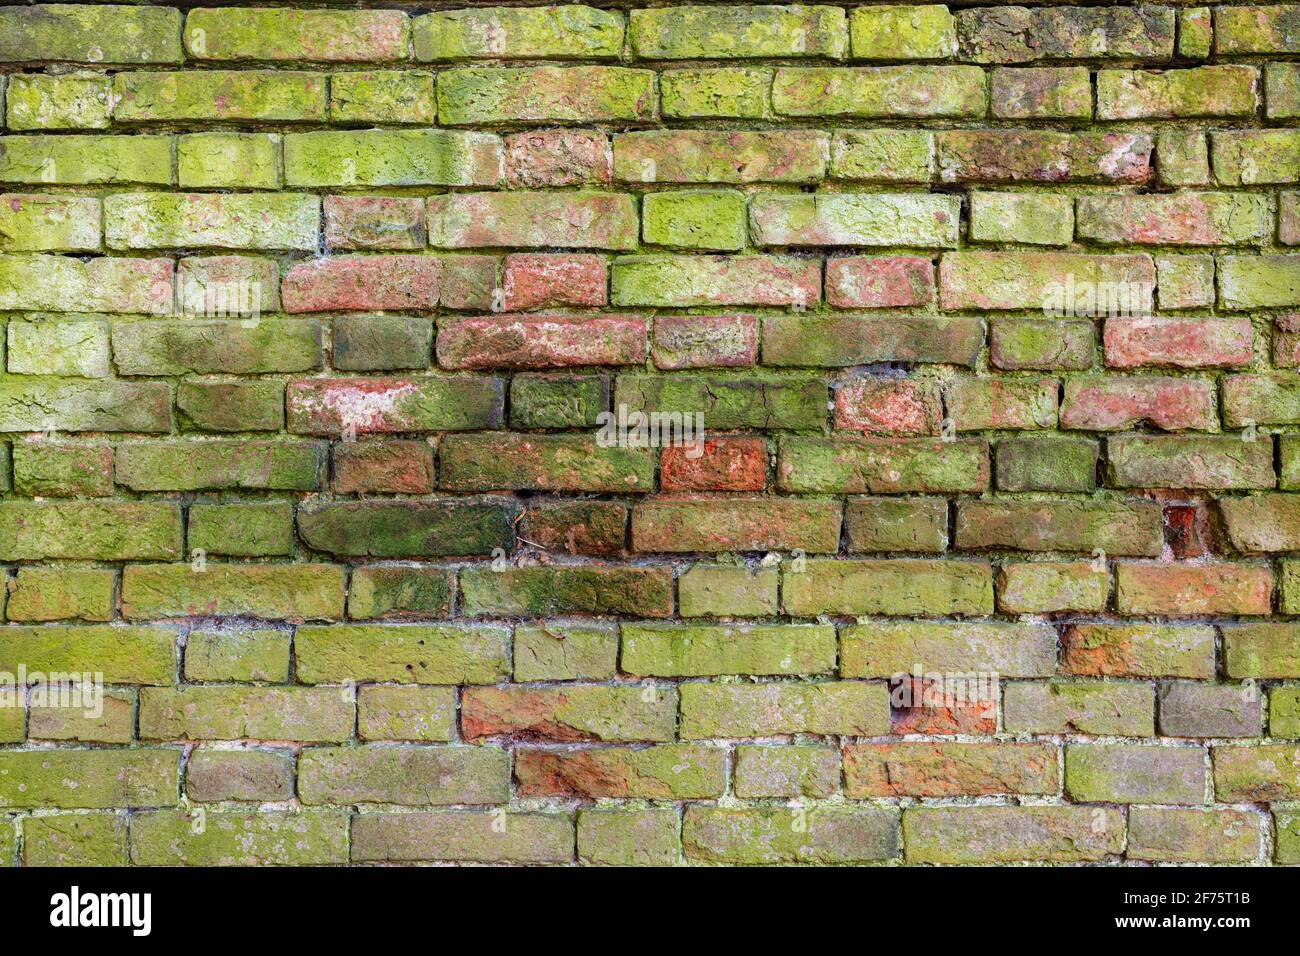 Mur de briques arrière-plan variété de briques mur de briques montrant des signes d'altération et d'usure, bien porté briques faites à la main avec mortier de chaux haute résolution Banque D'Images